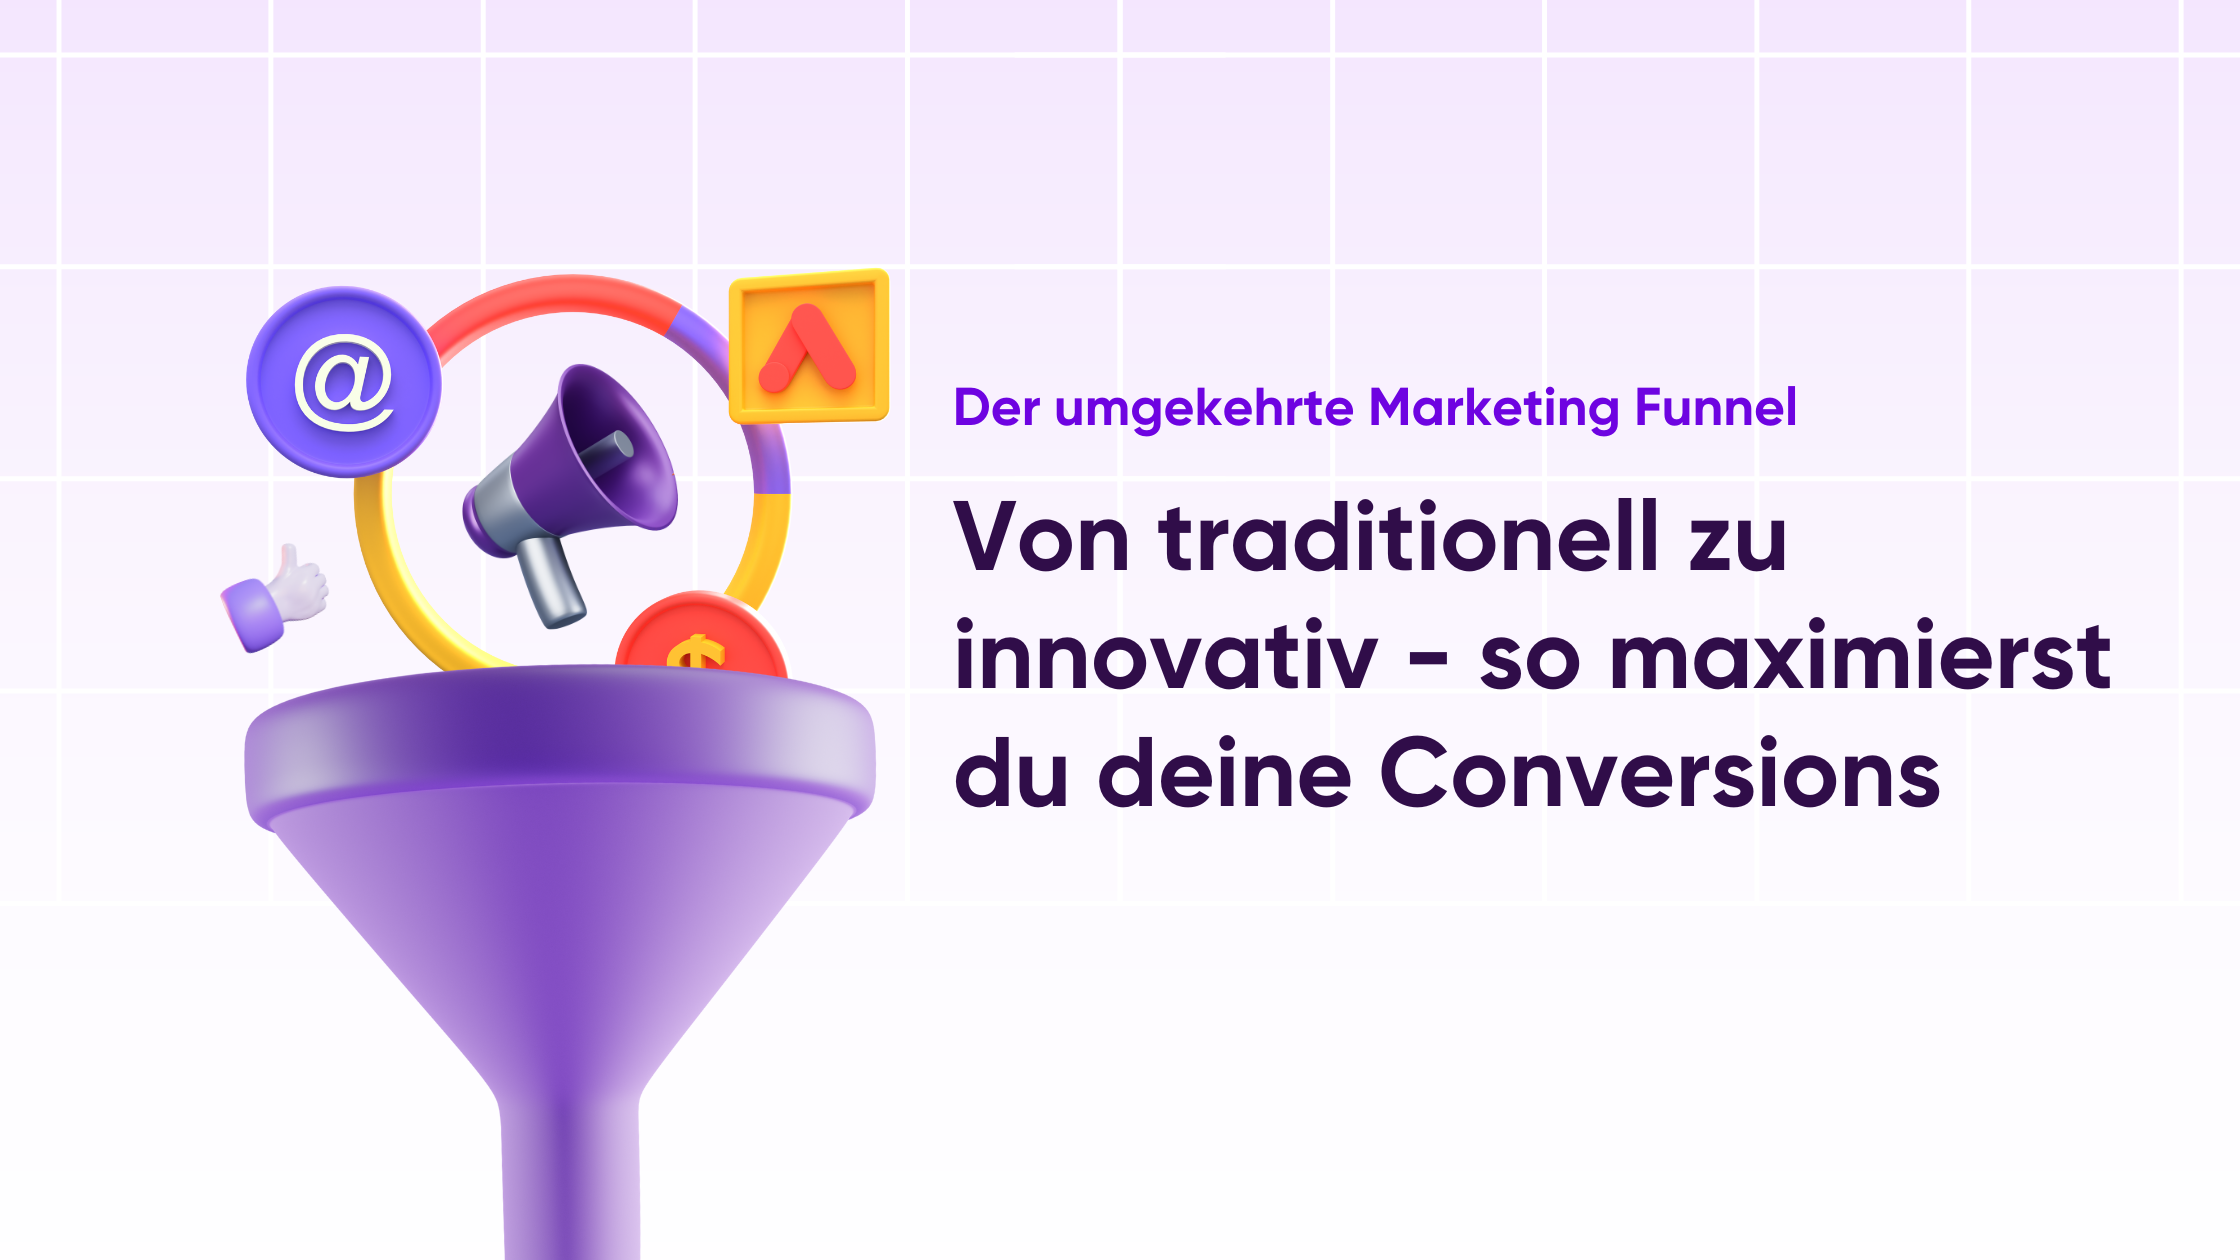 Der umgekehrte Marketing Funnel Von traditionell zu innovatiov - so maximierst du deine Conversions